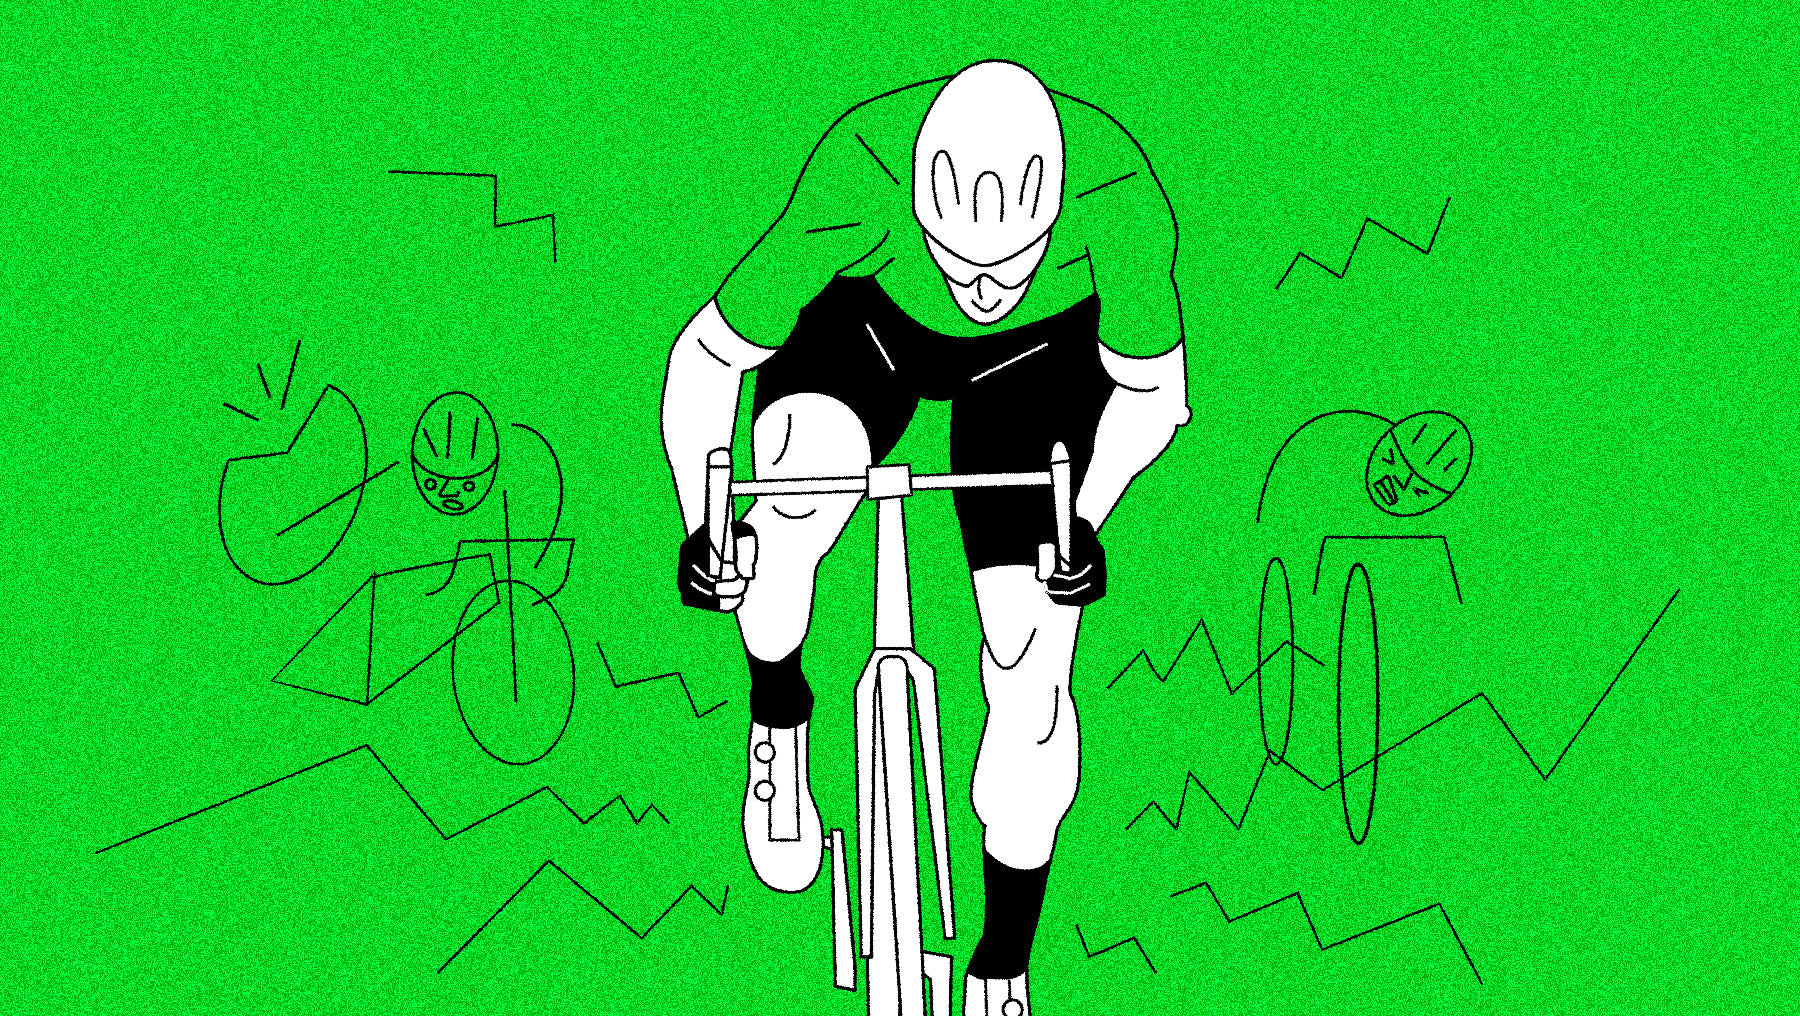 Tour de France sprinter's green jersey